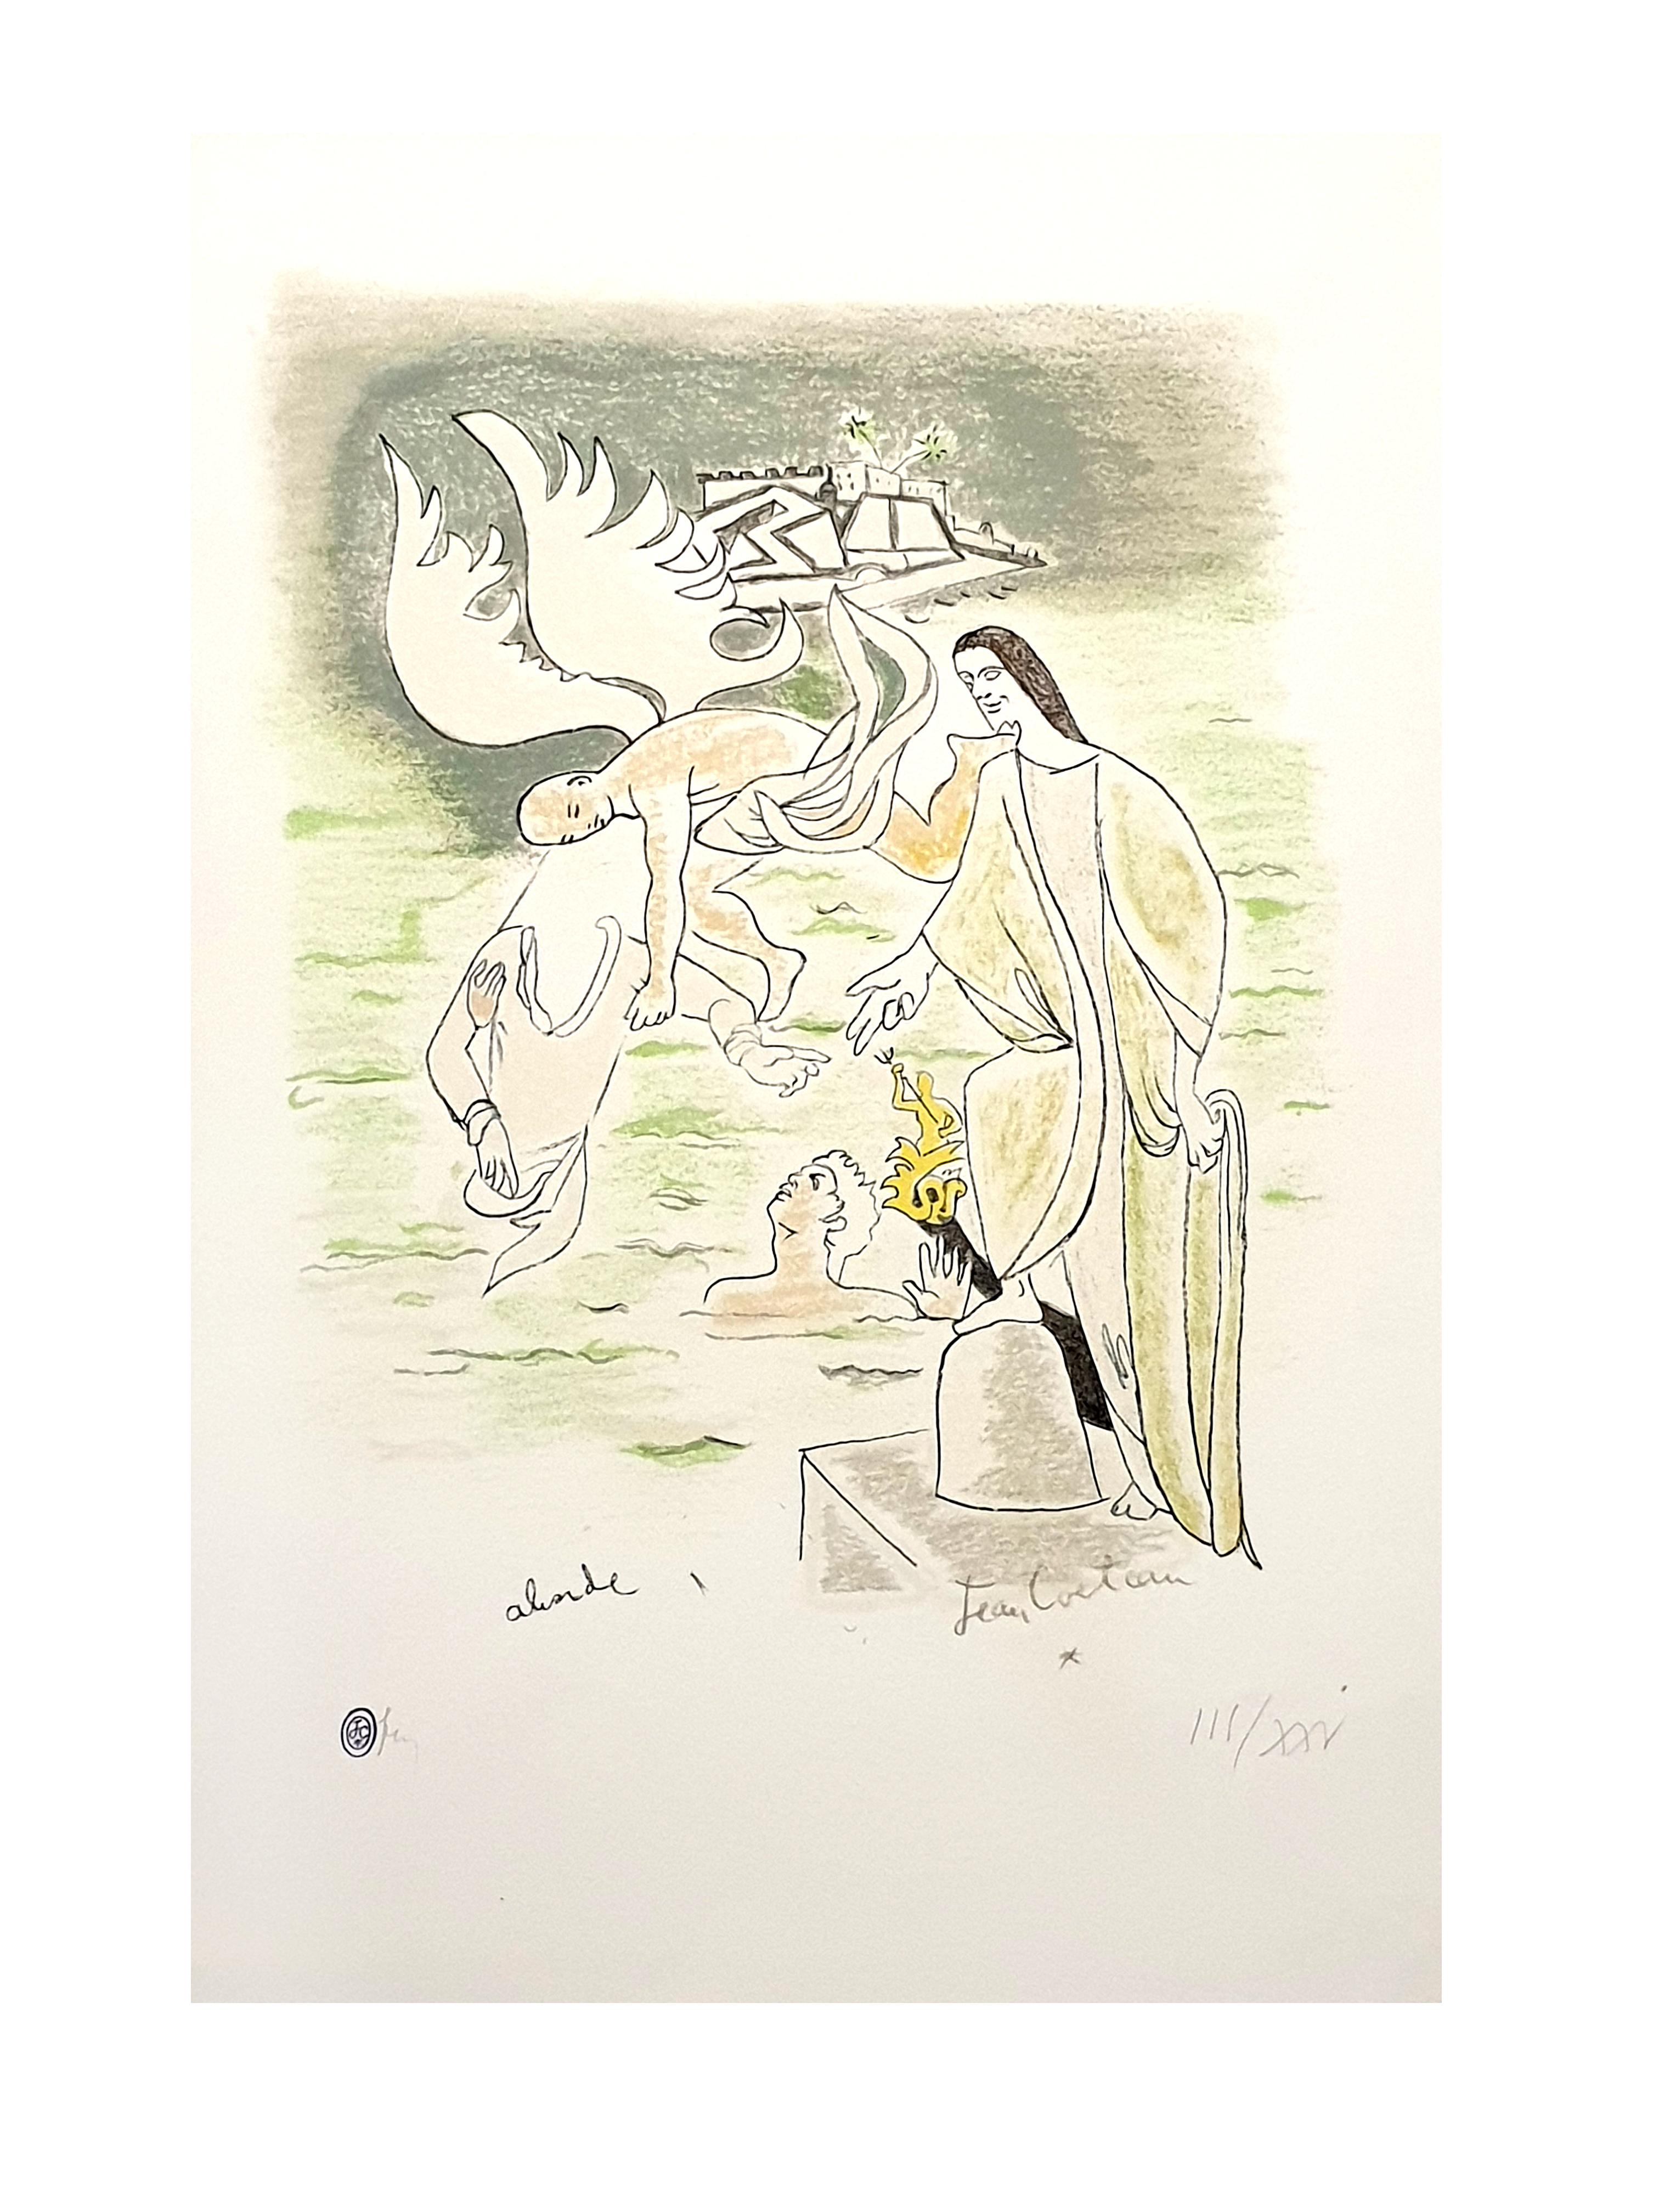 Jean Cocteau - Ange - Lithographie originale coloriée à la main
Signé dans la plaque
Timbre signé
Coloré à la main au crayon.
Edition : /XXV
Dimensions : 47.5 x 32,5 cm
1957
Provenance : Succession Dermit, héritier de Cocteau

Jean